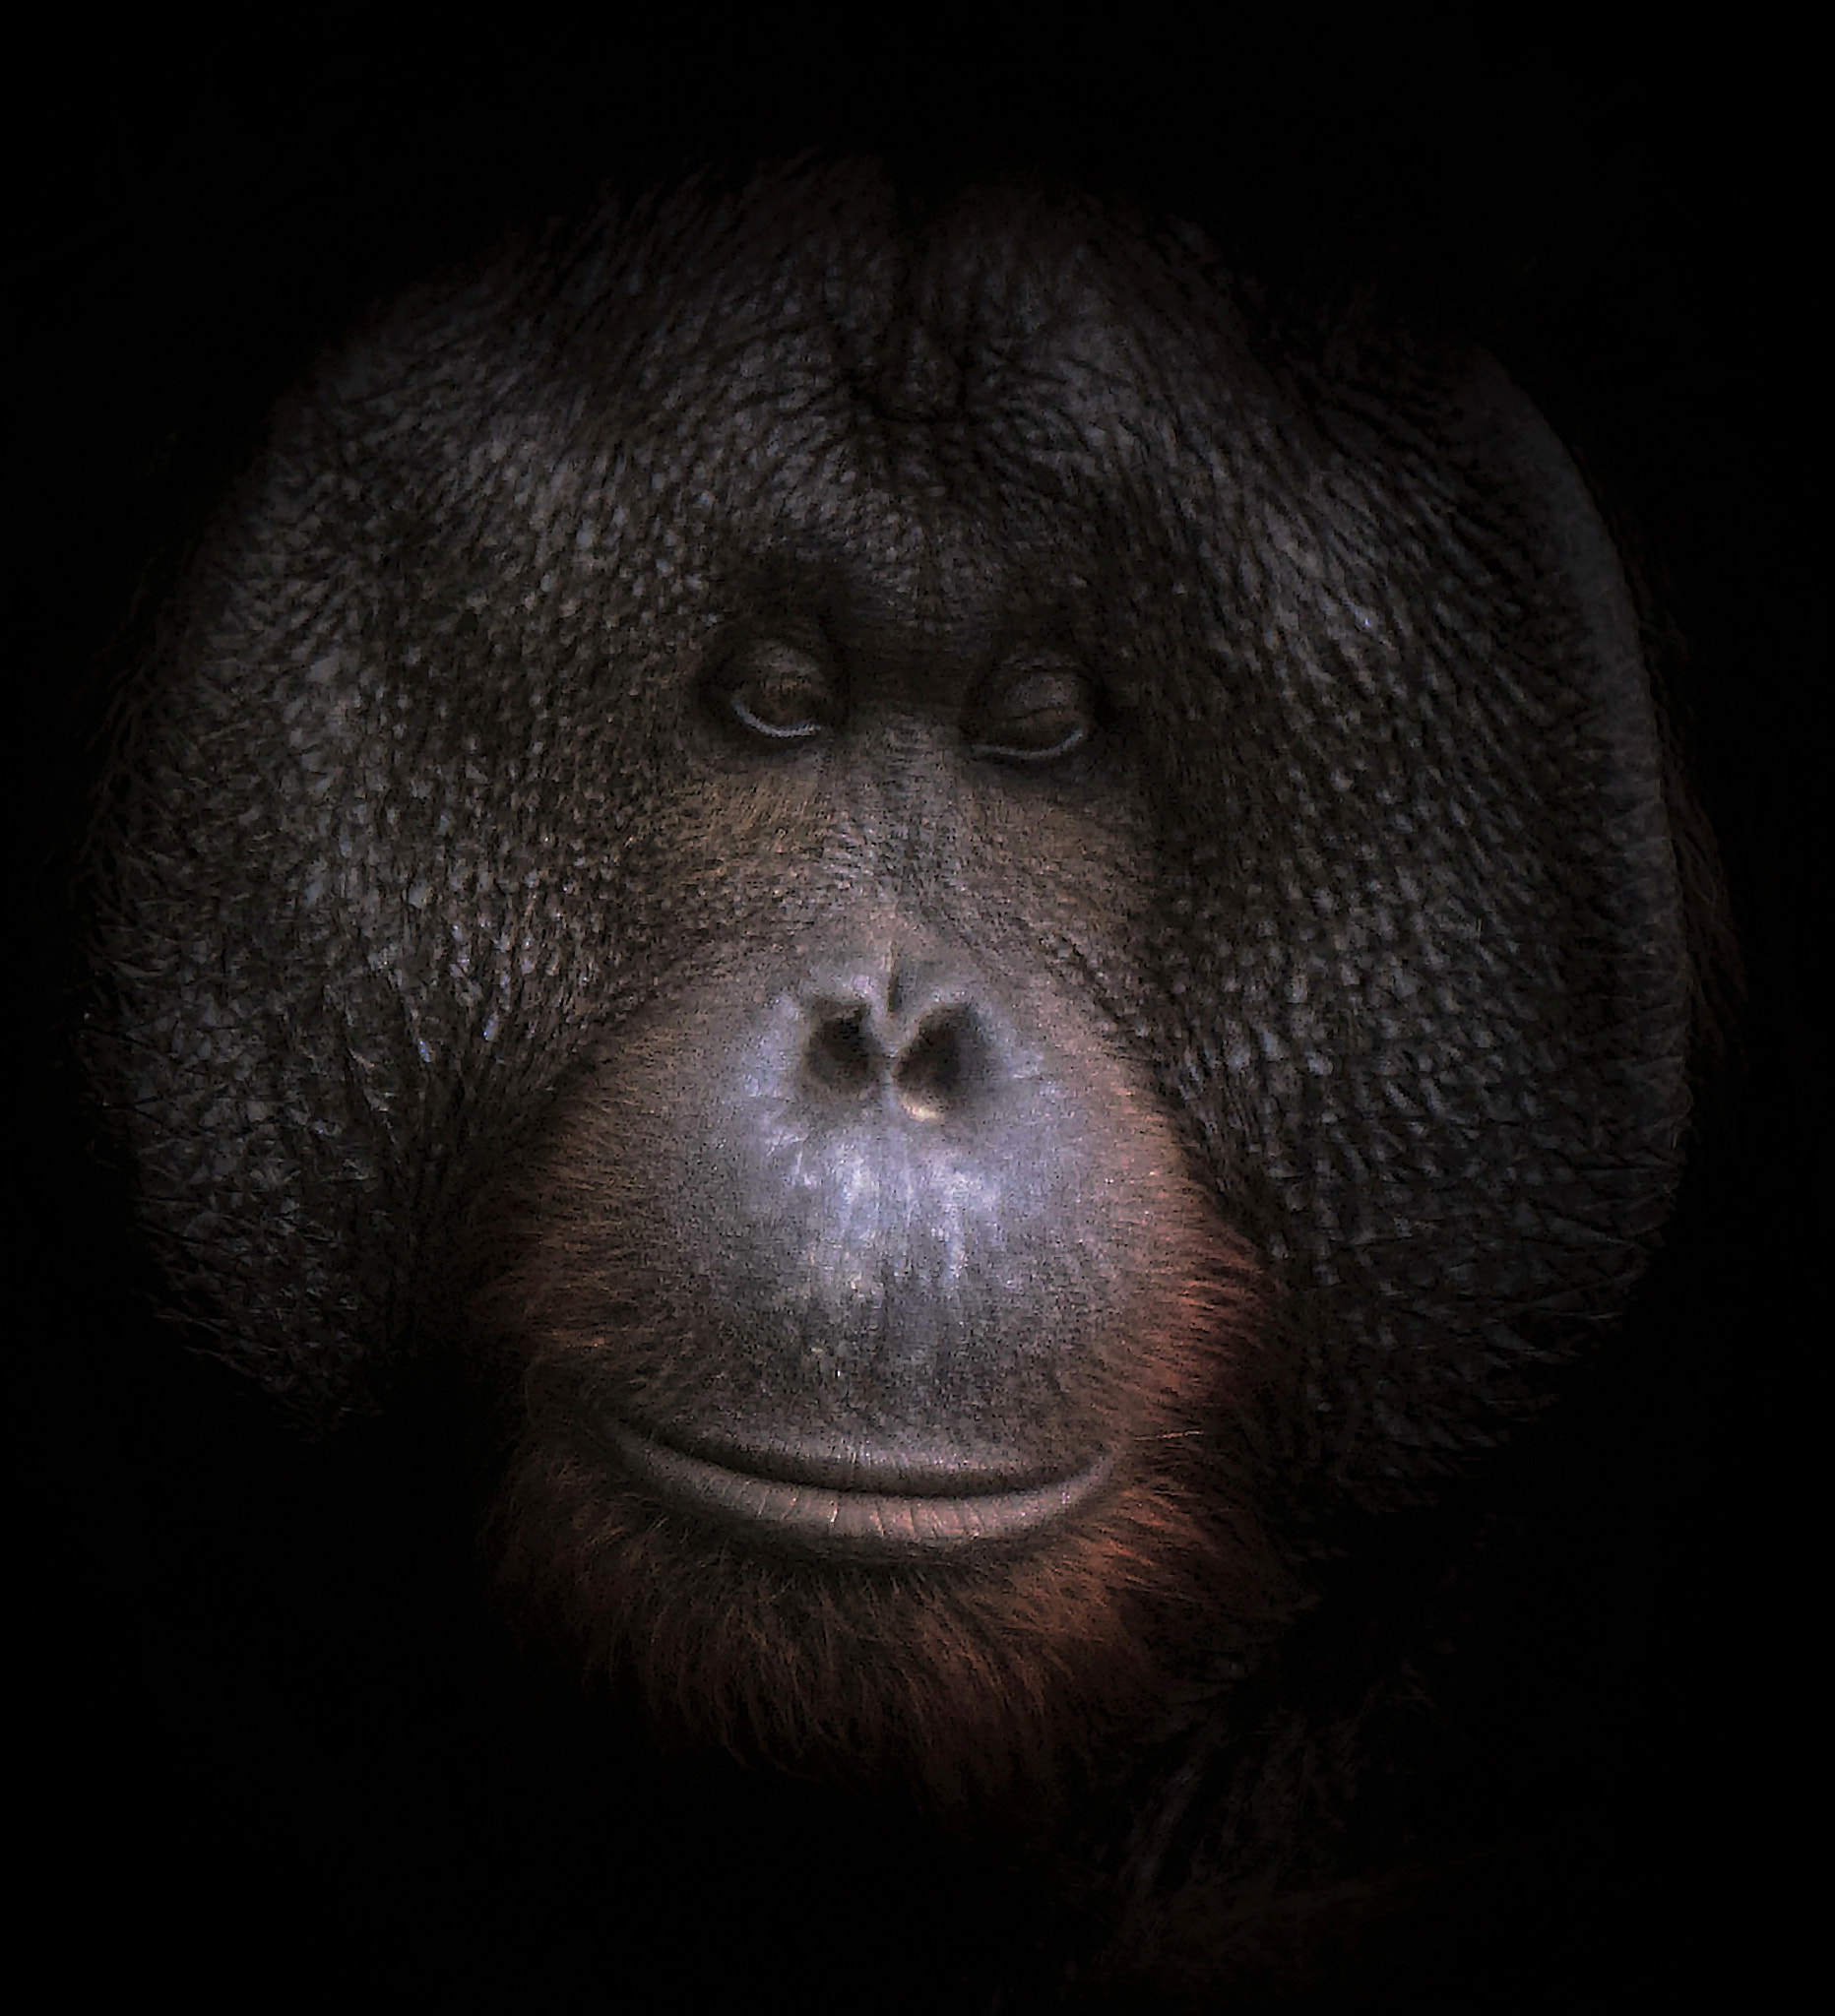 Nikon D5300 + Nikon AF-S DX Nikkor 18-300mm F3.5-5.6G ED VR sample photo. Flange-faced orangutan photography